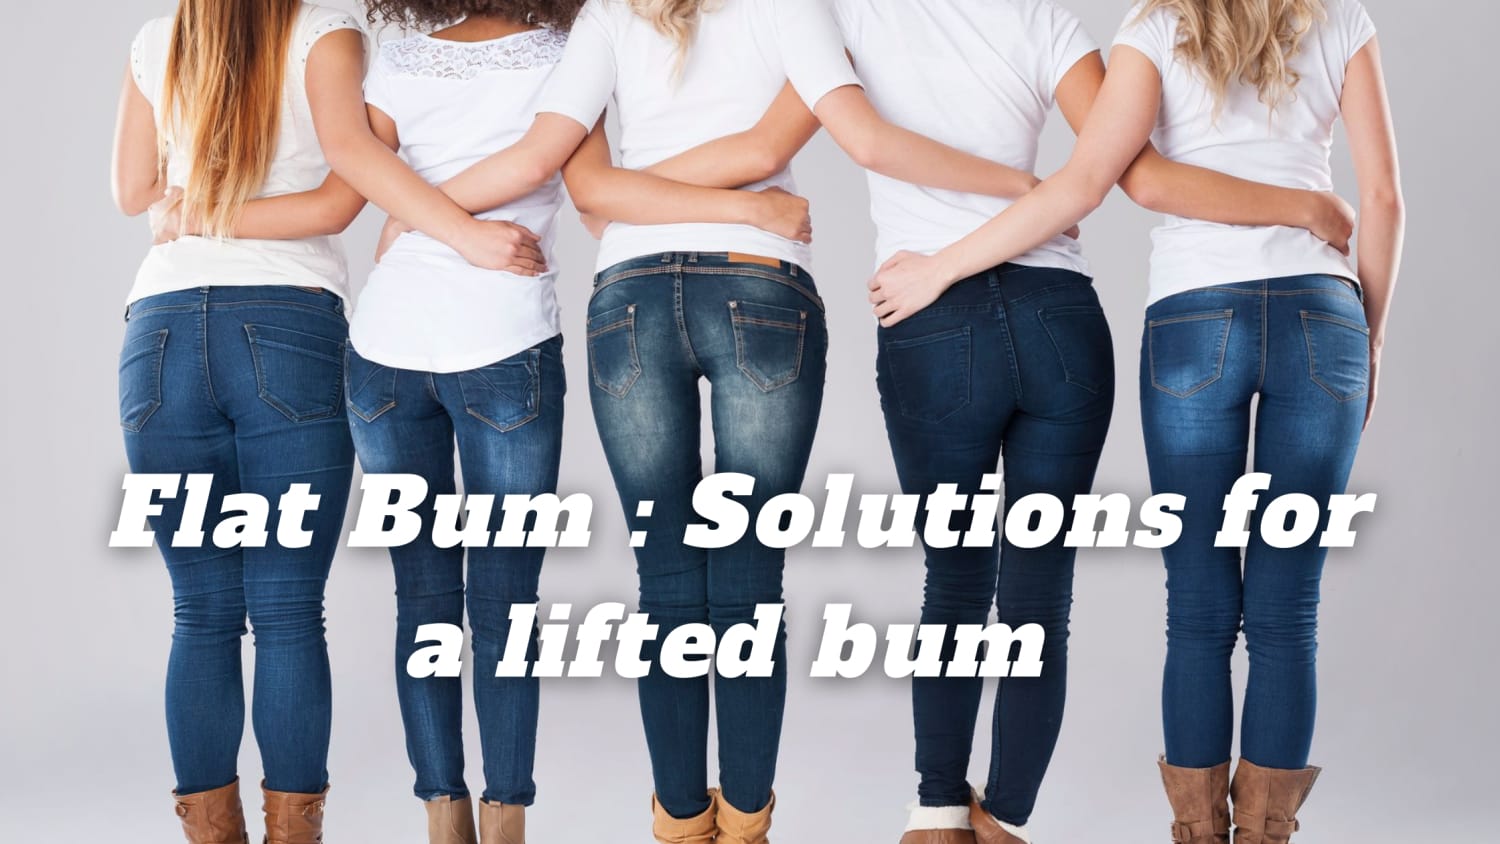 FLAT BUM: HOW TO GET A BIG BUM